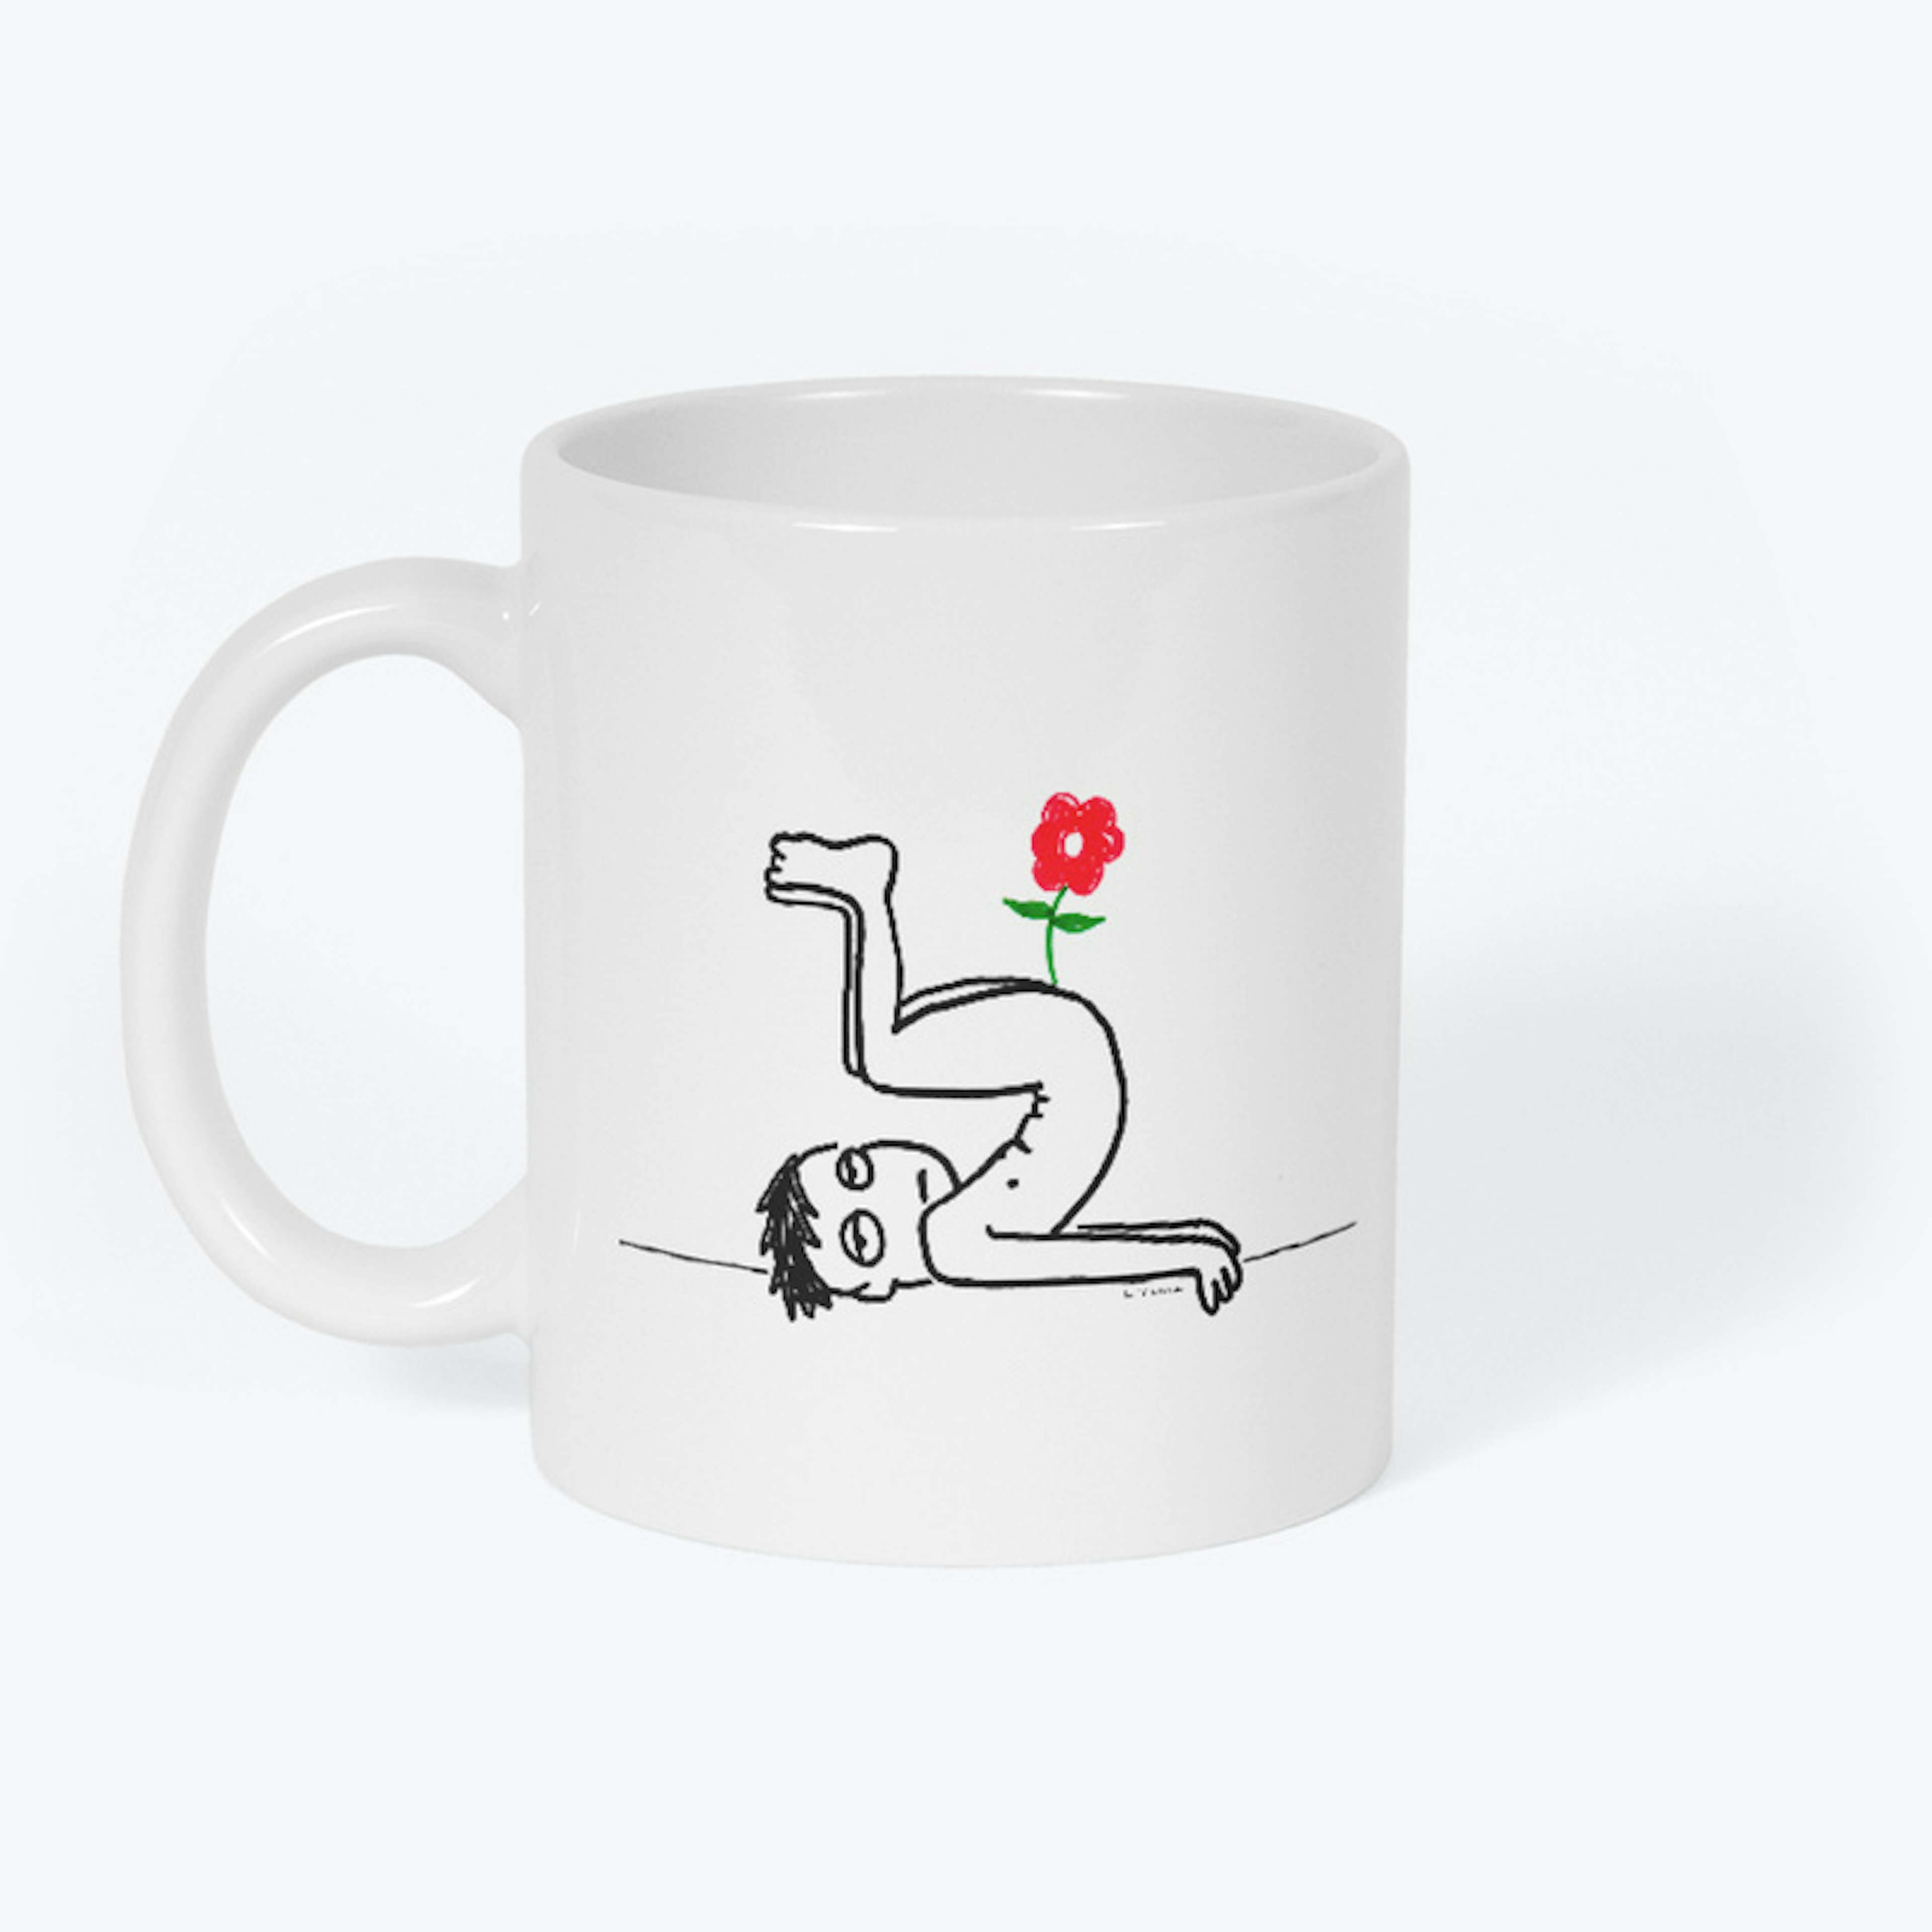 "Flower In an As**ole" Mug